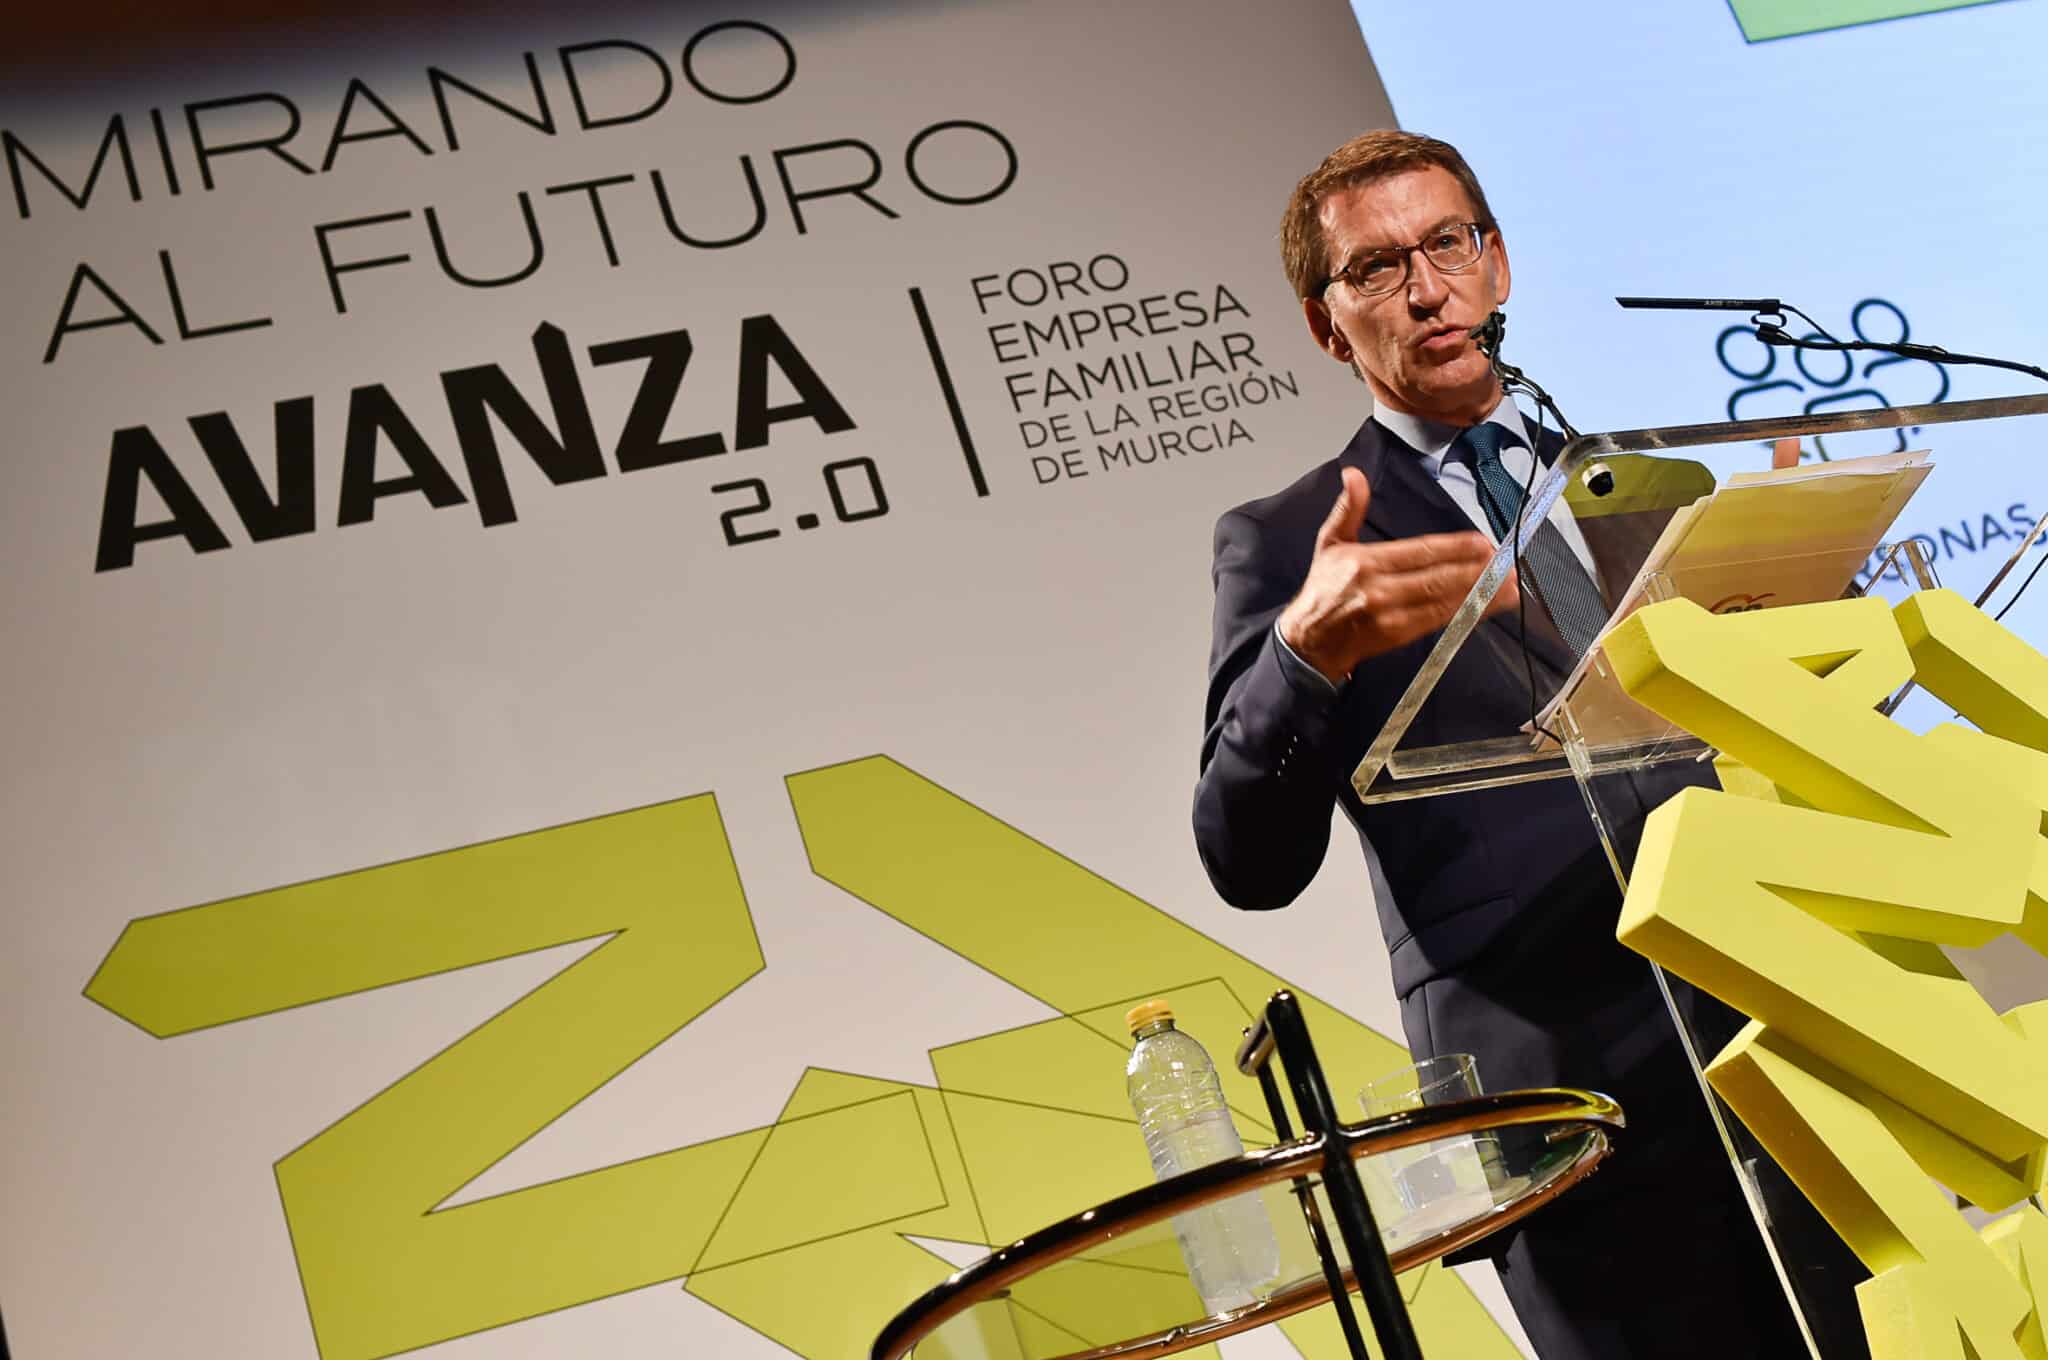 El presidente del PP, Alberto Núñez Feijóo, interviene durante la conferencia inaugural de la segunda edición de 'Avanza', el foro de Empresa Familiar de Murcia.